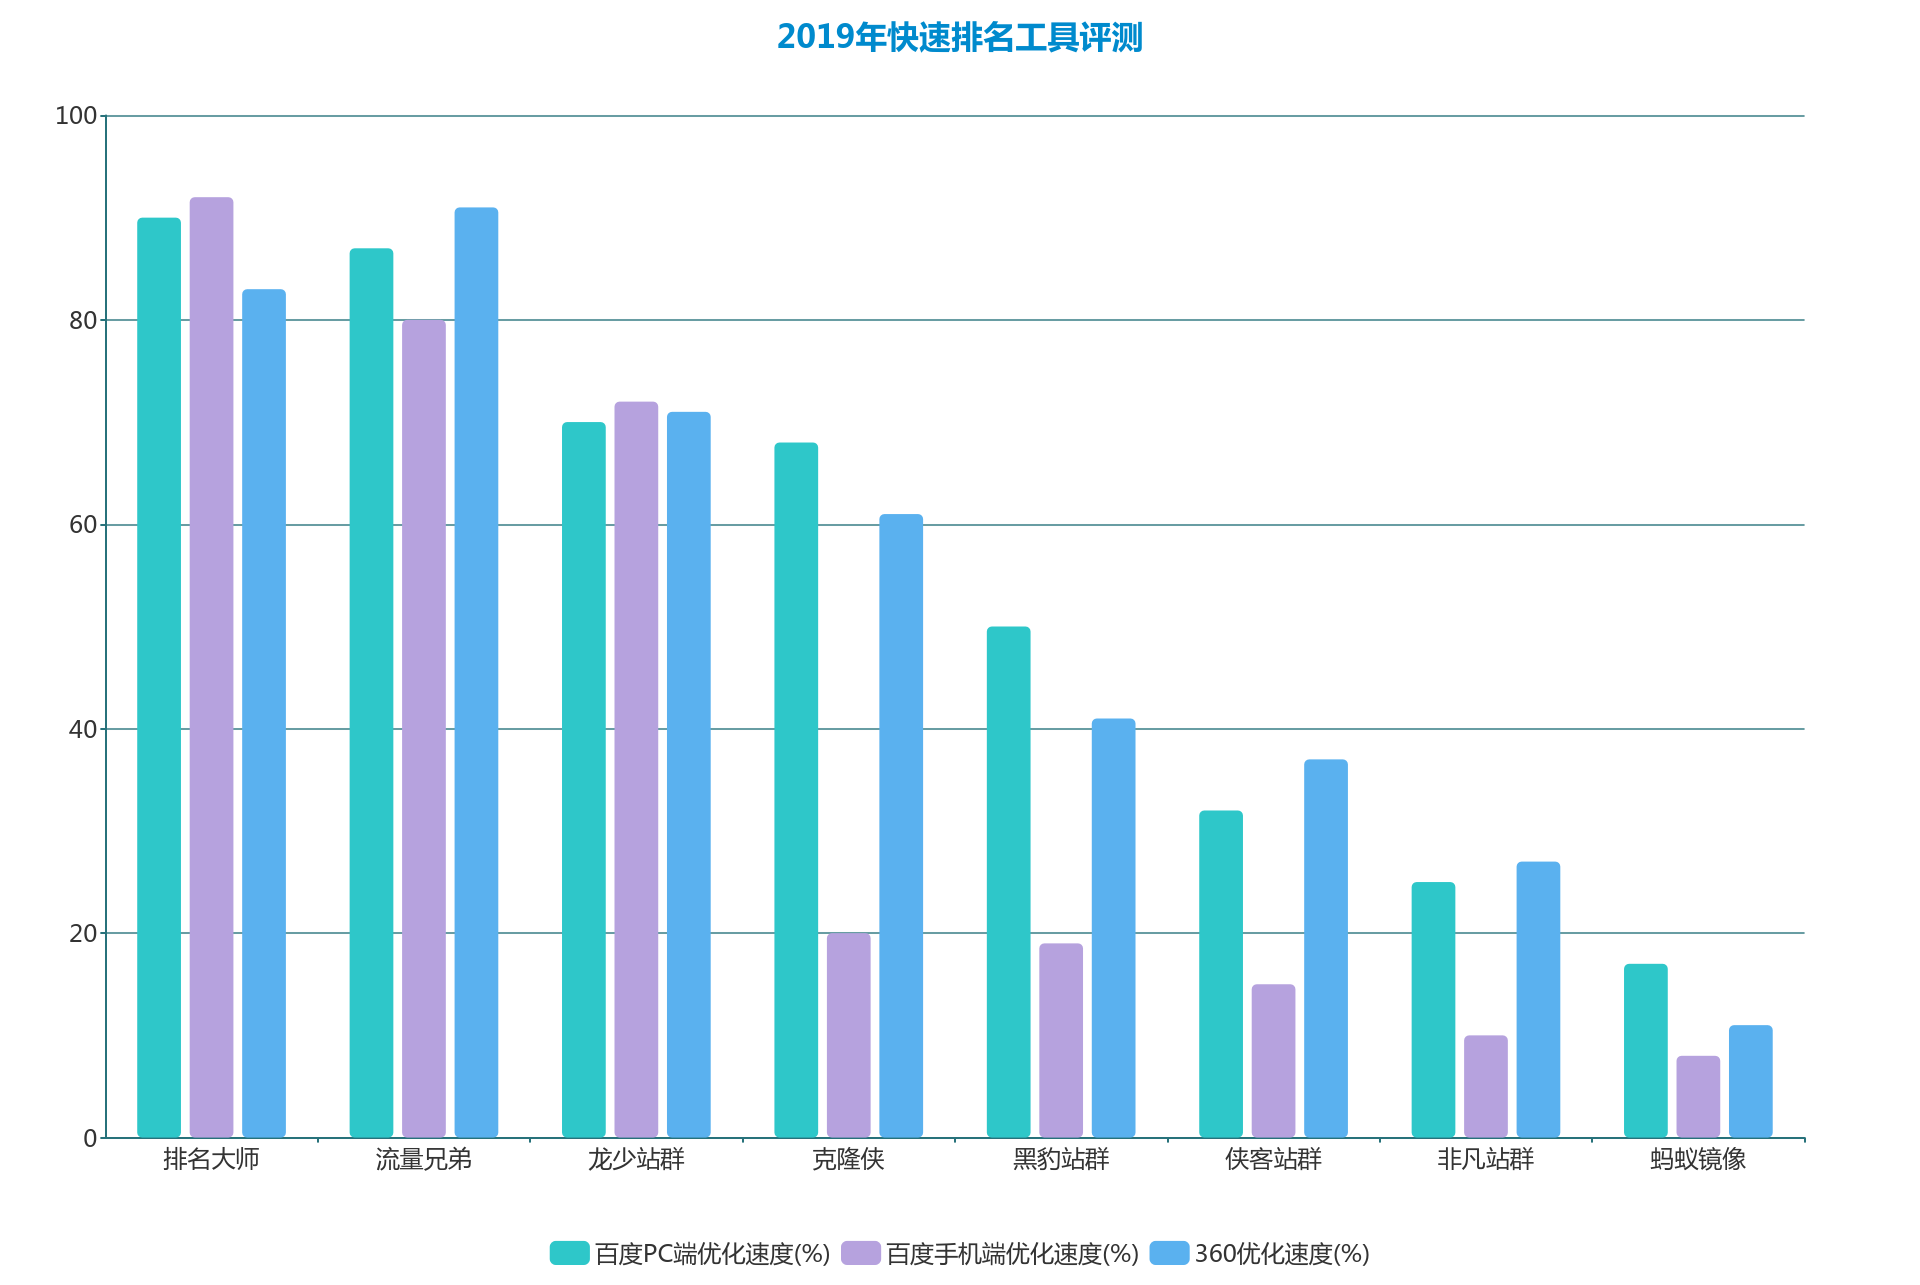 2019xp系统下载排行_榜单第3期|黑龙江法院系统官方微信2019年3月排行榜发